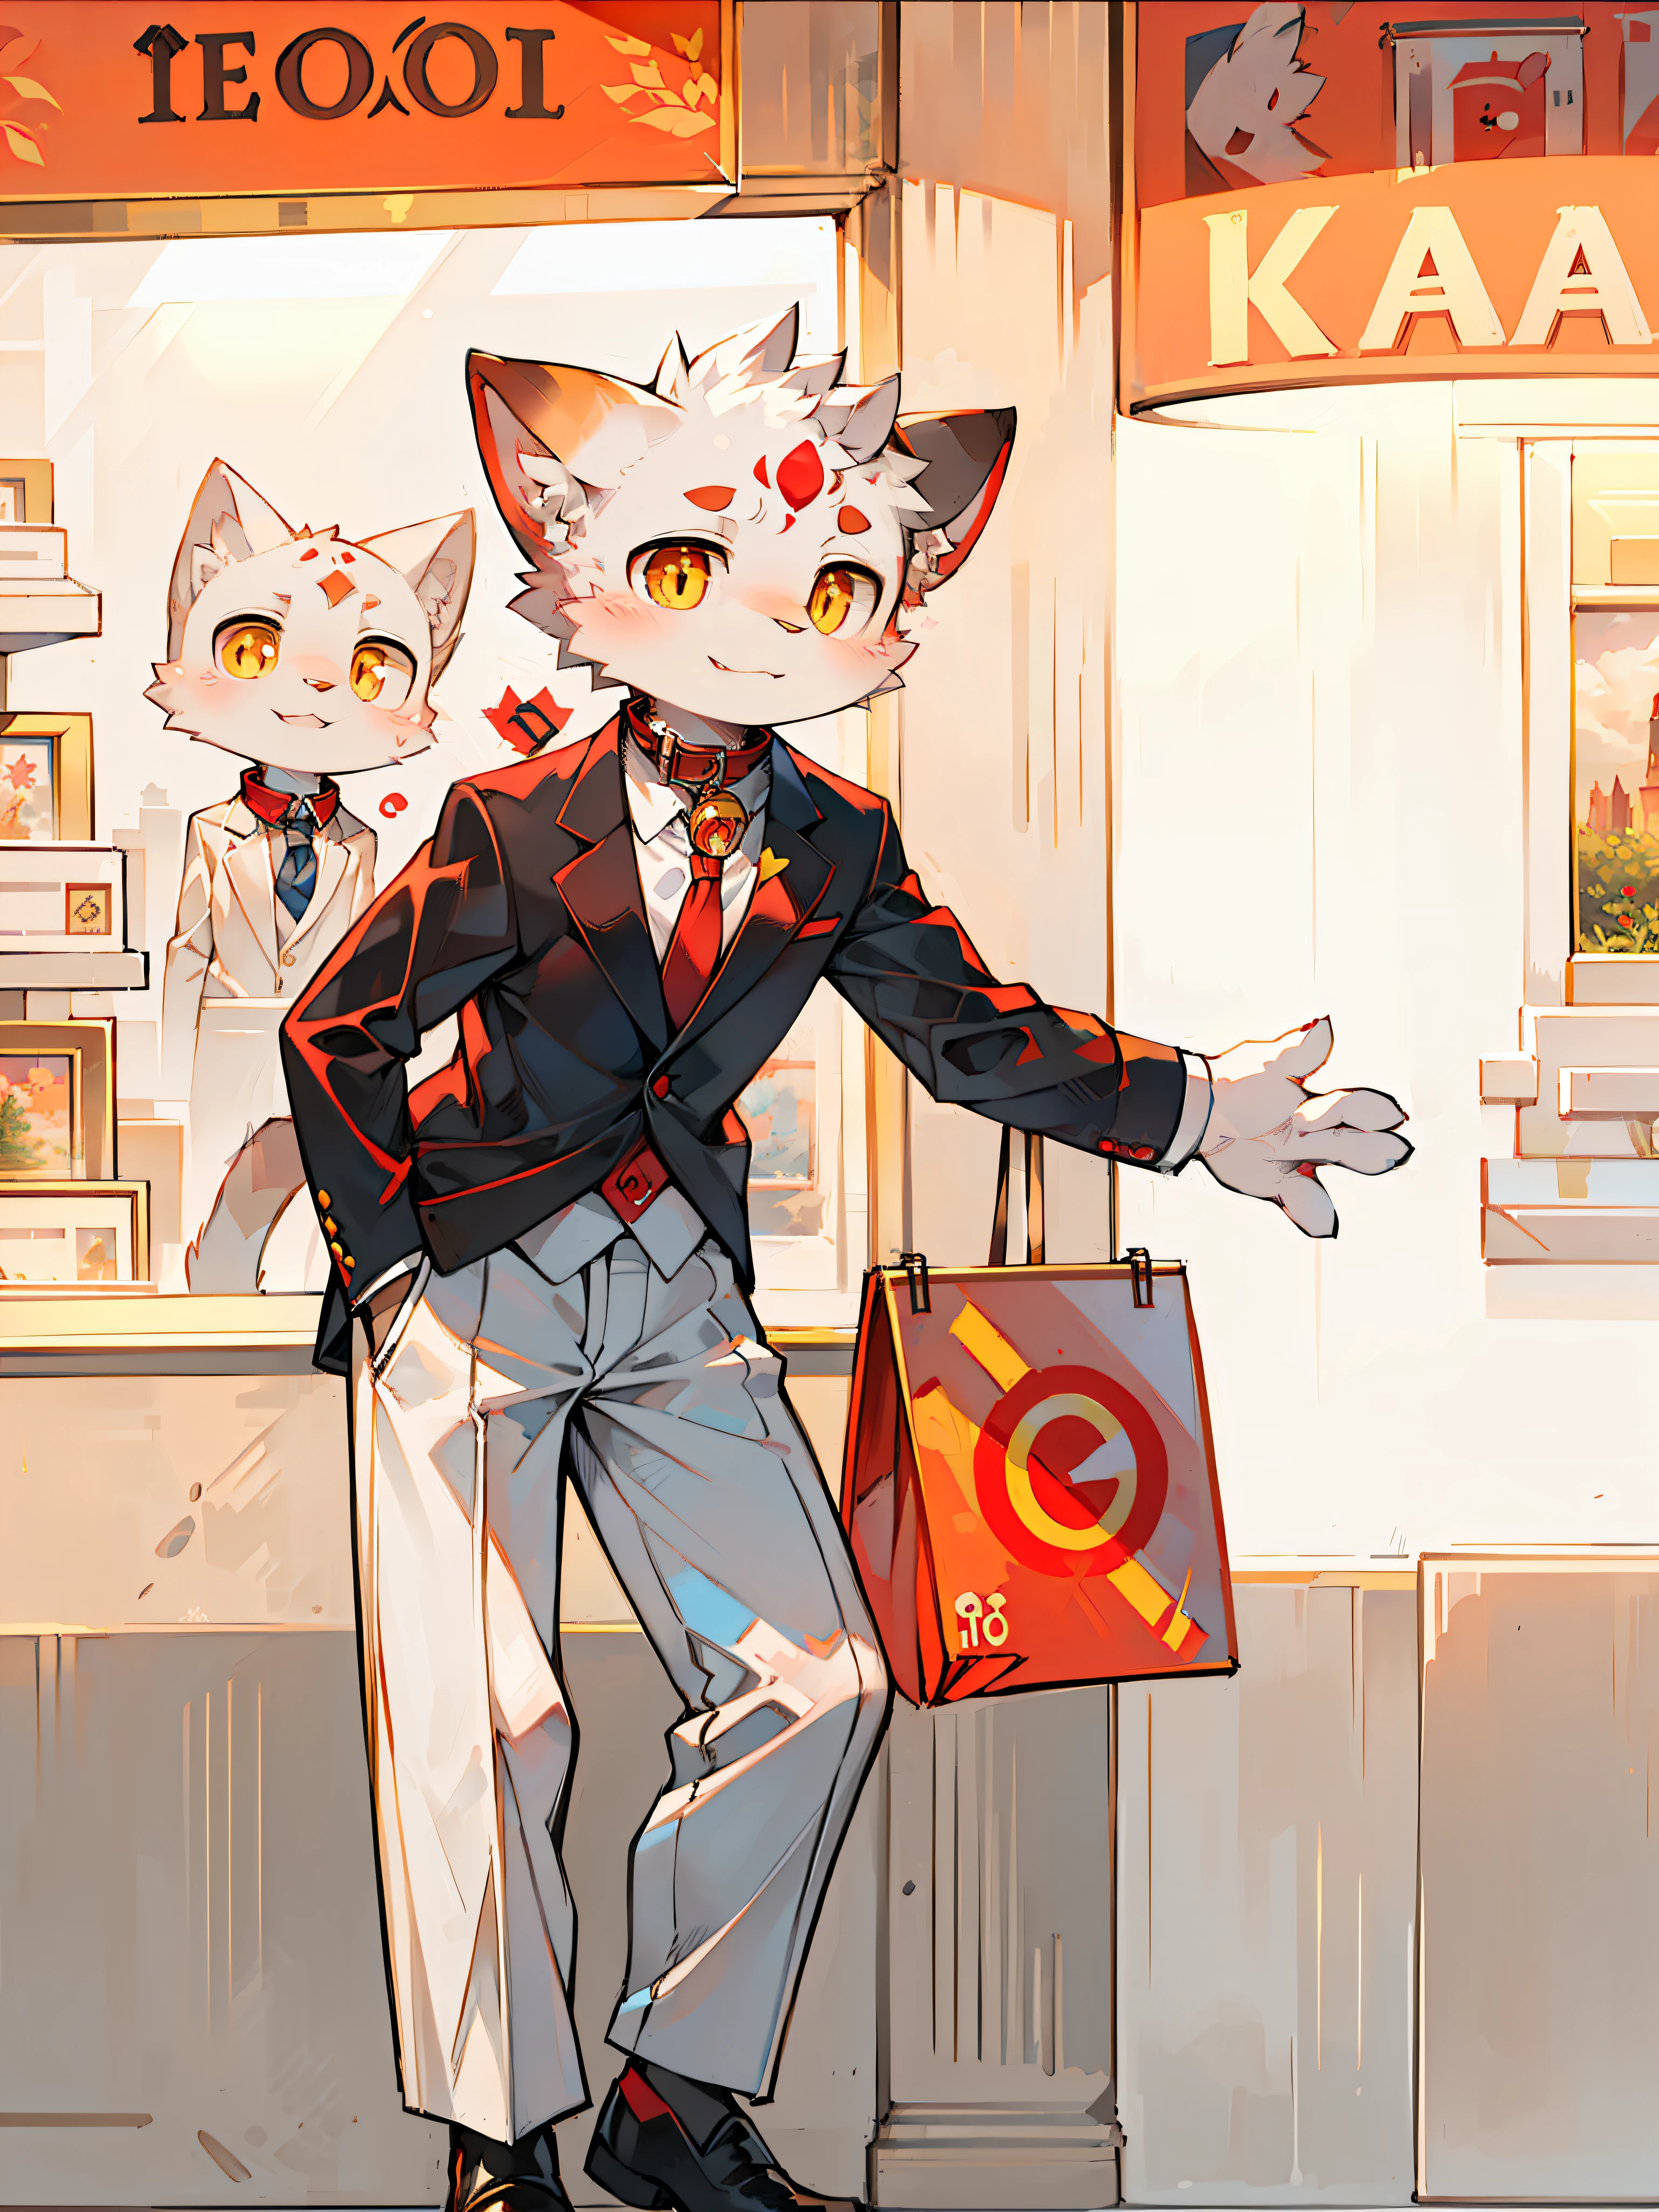 가게 앞에 양복과 넥타이를 매고 서 있는 고양이가 있어요, 목에 칼라가 있고, 황금빛 눈동자, 부드러운 조명, 빨간색 둥근 눈썹, 귀여운 표정, 이마에 빨간 로고, 걸작, 걸작, 섬세한 그림 스타일, 1080P, 얼굴 털은 흰색이다